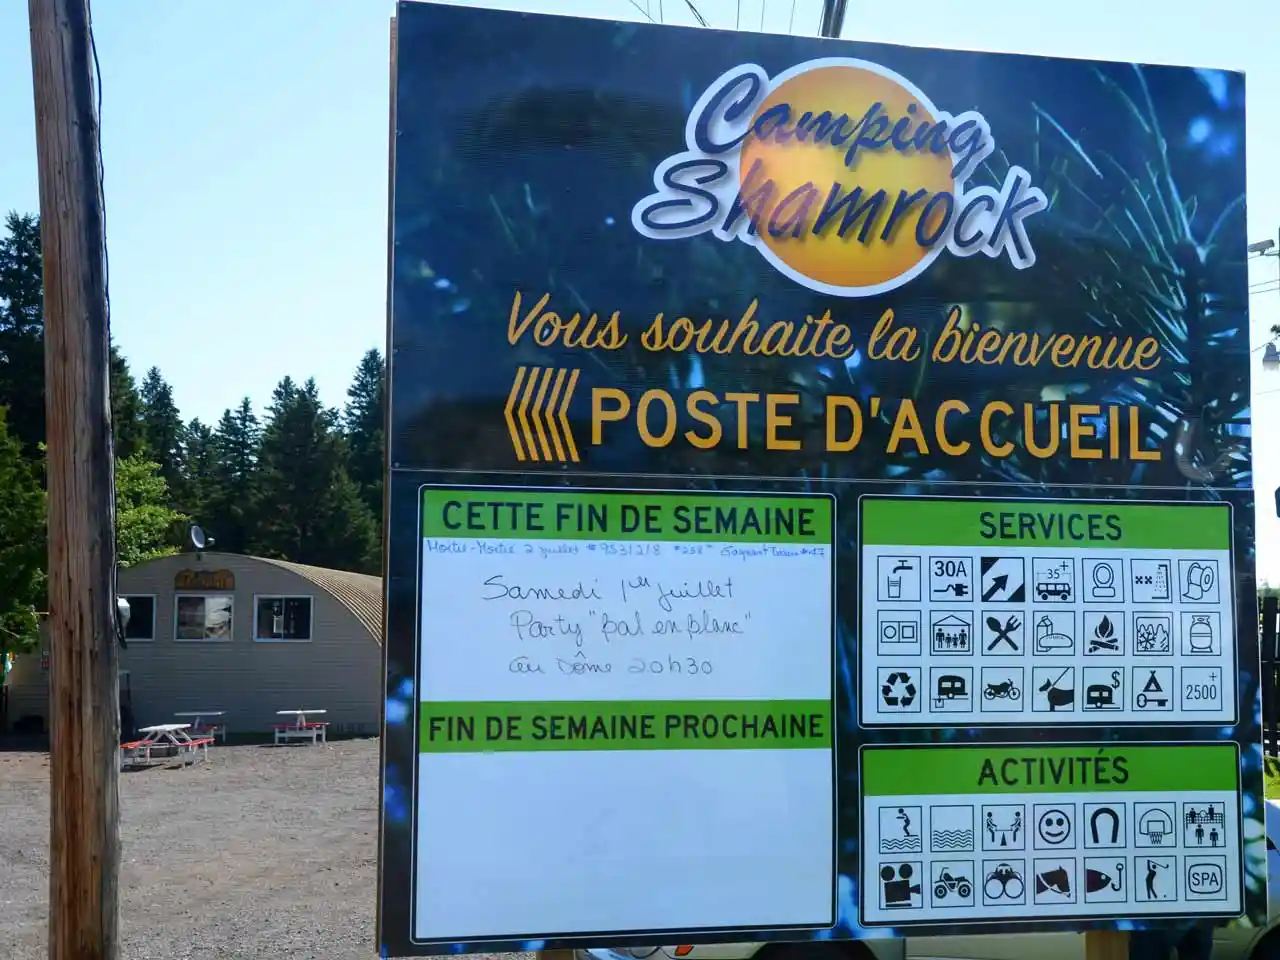 Camping Shamrock Signage panels 2022